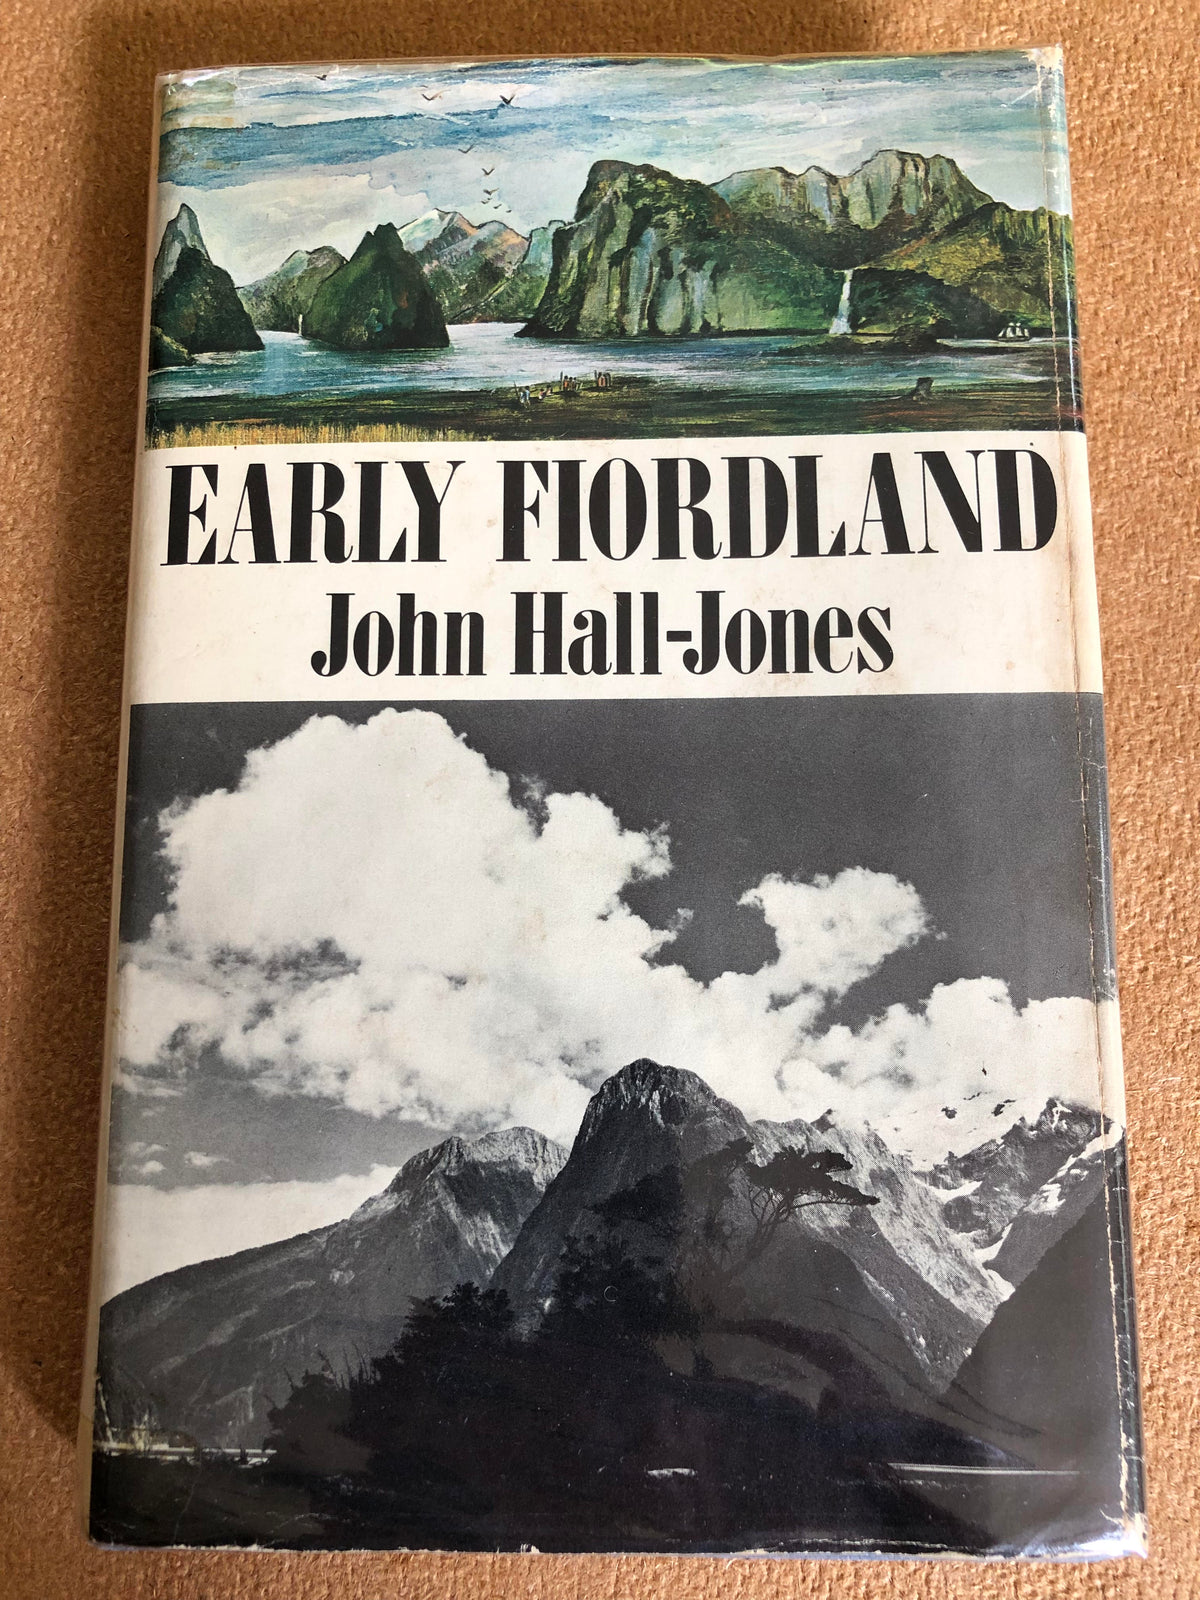 Early Fiordland - John Hall-Jones